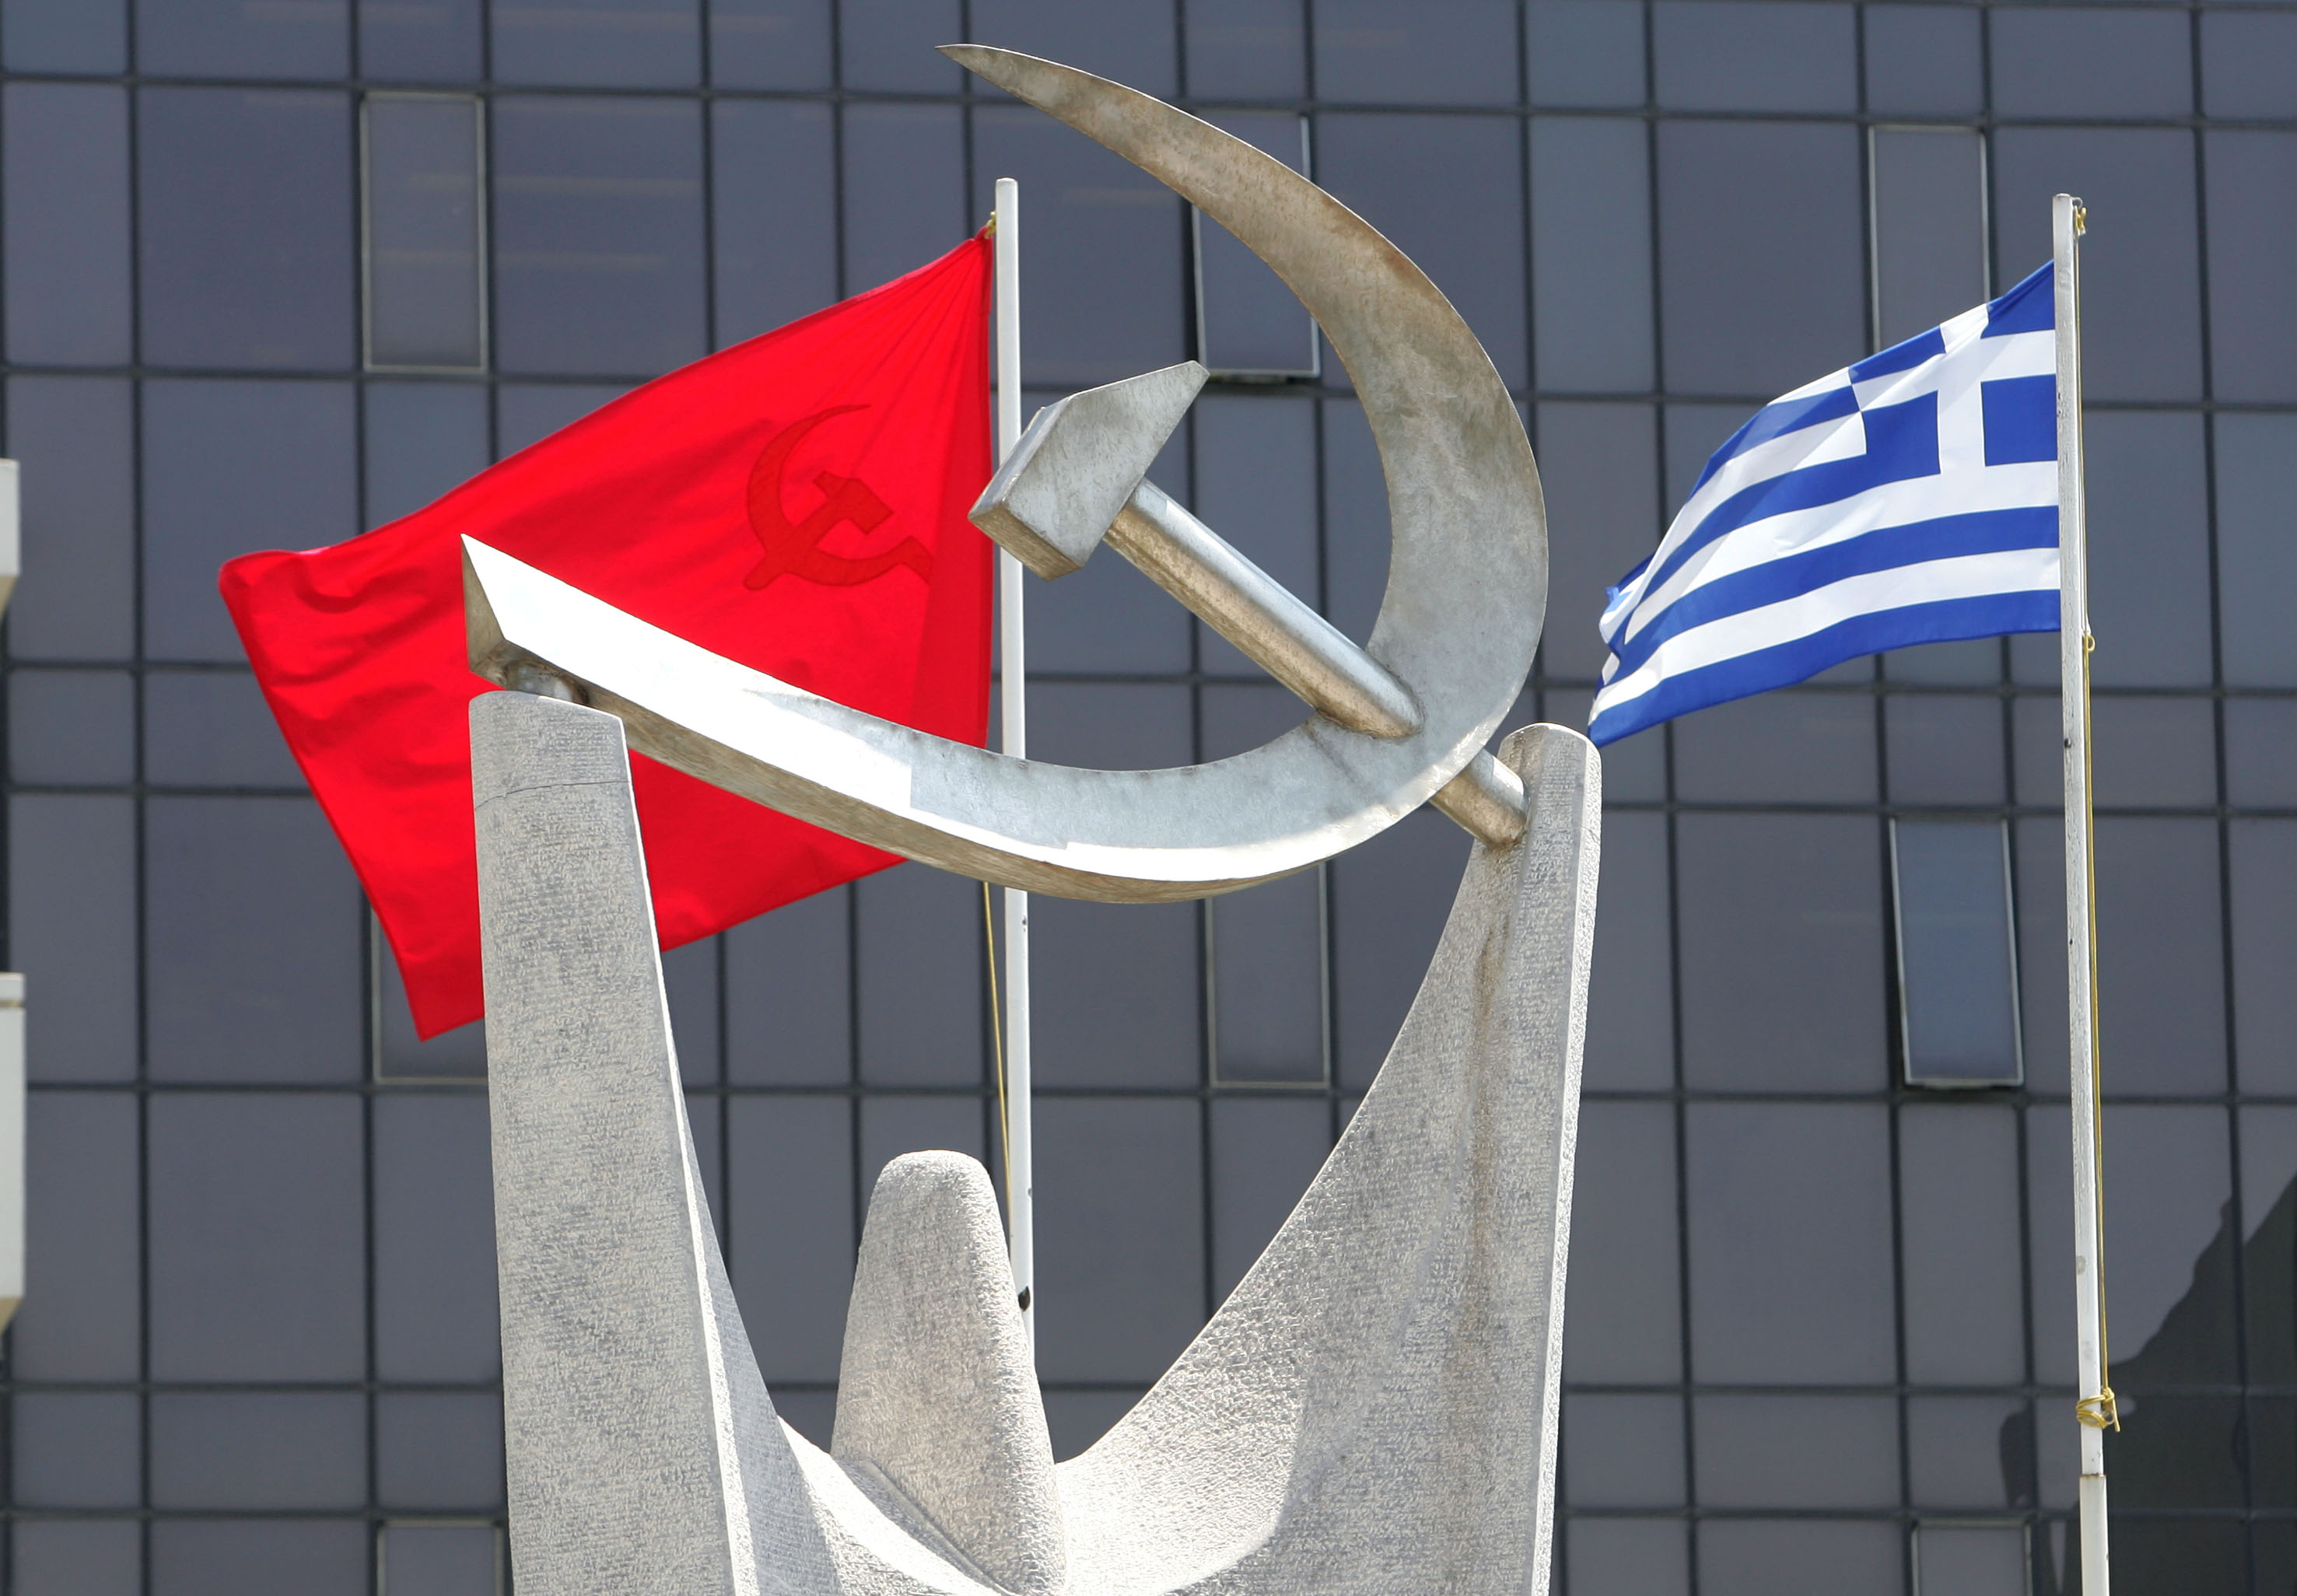 83 κομμουνιστικά κόμματα στη 13η Διεθνή Συνάντηση στην Αθήνα